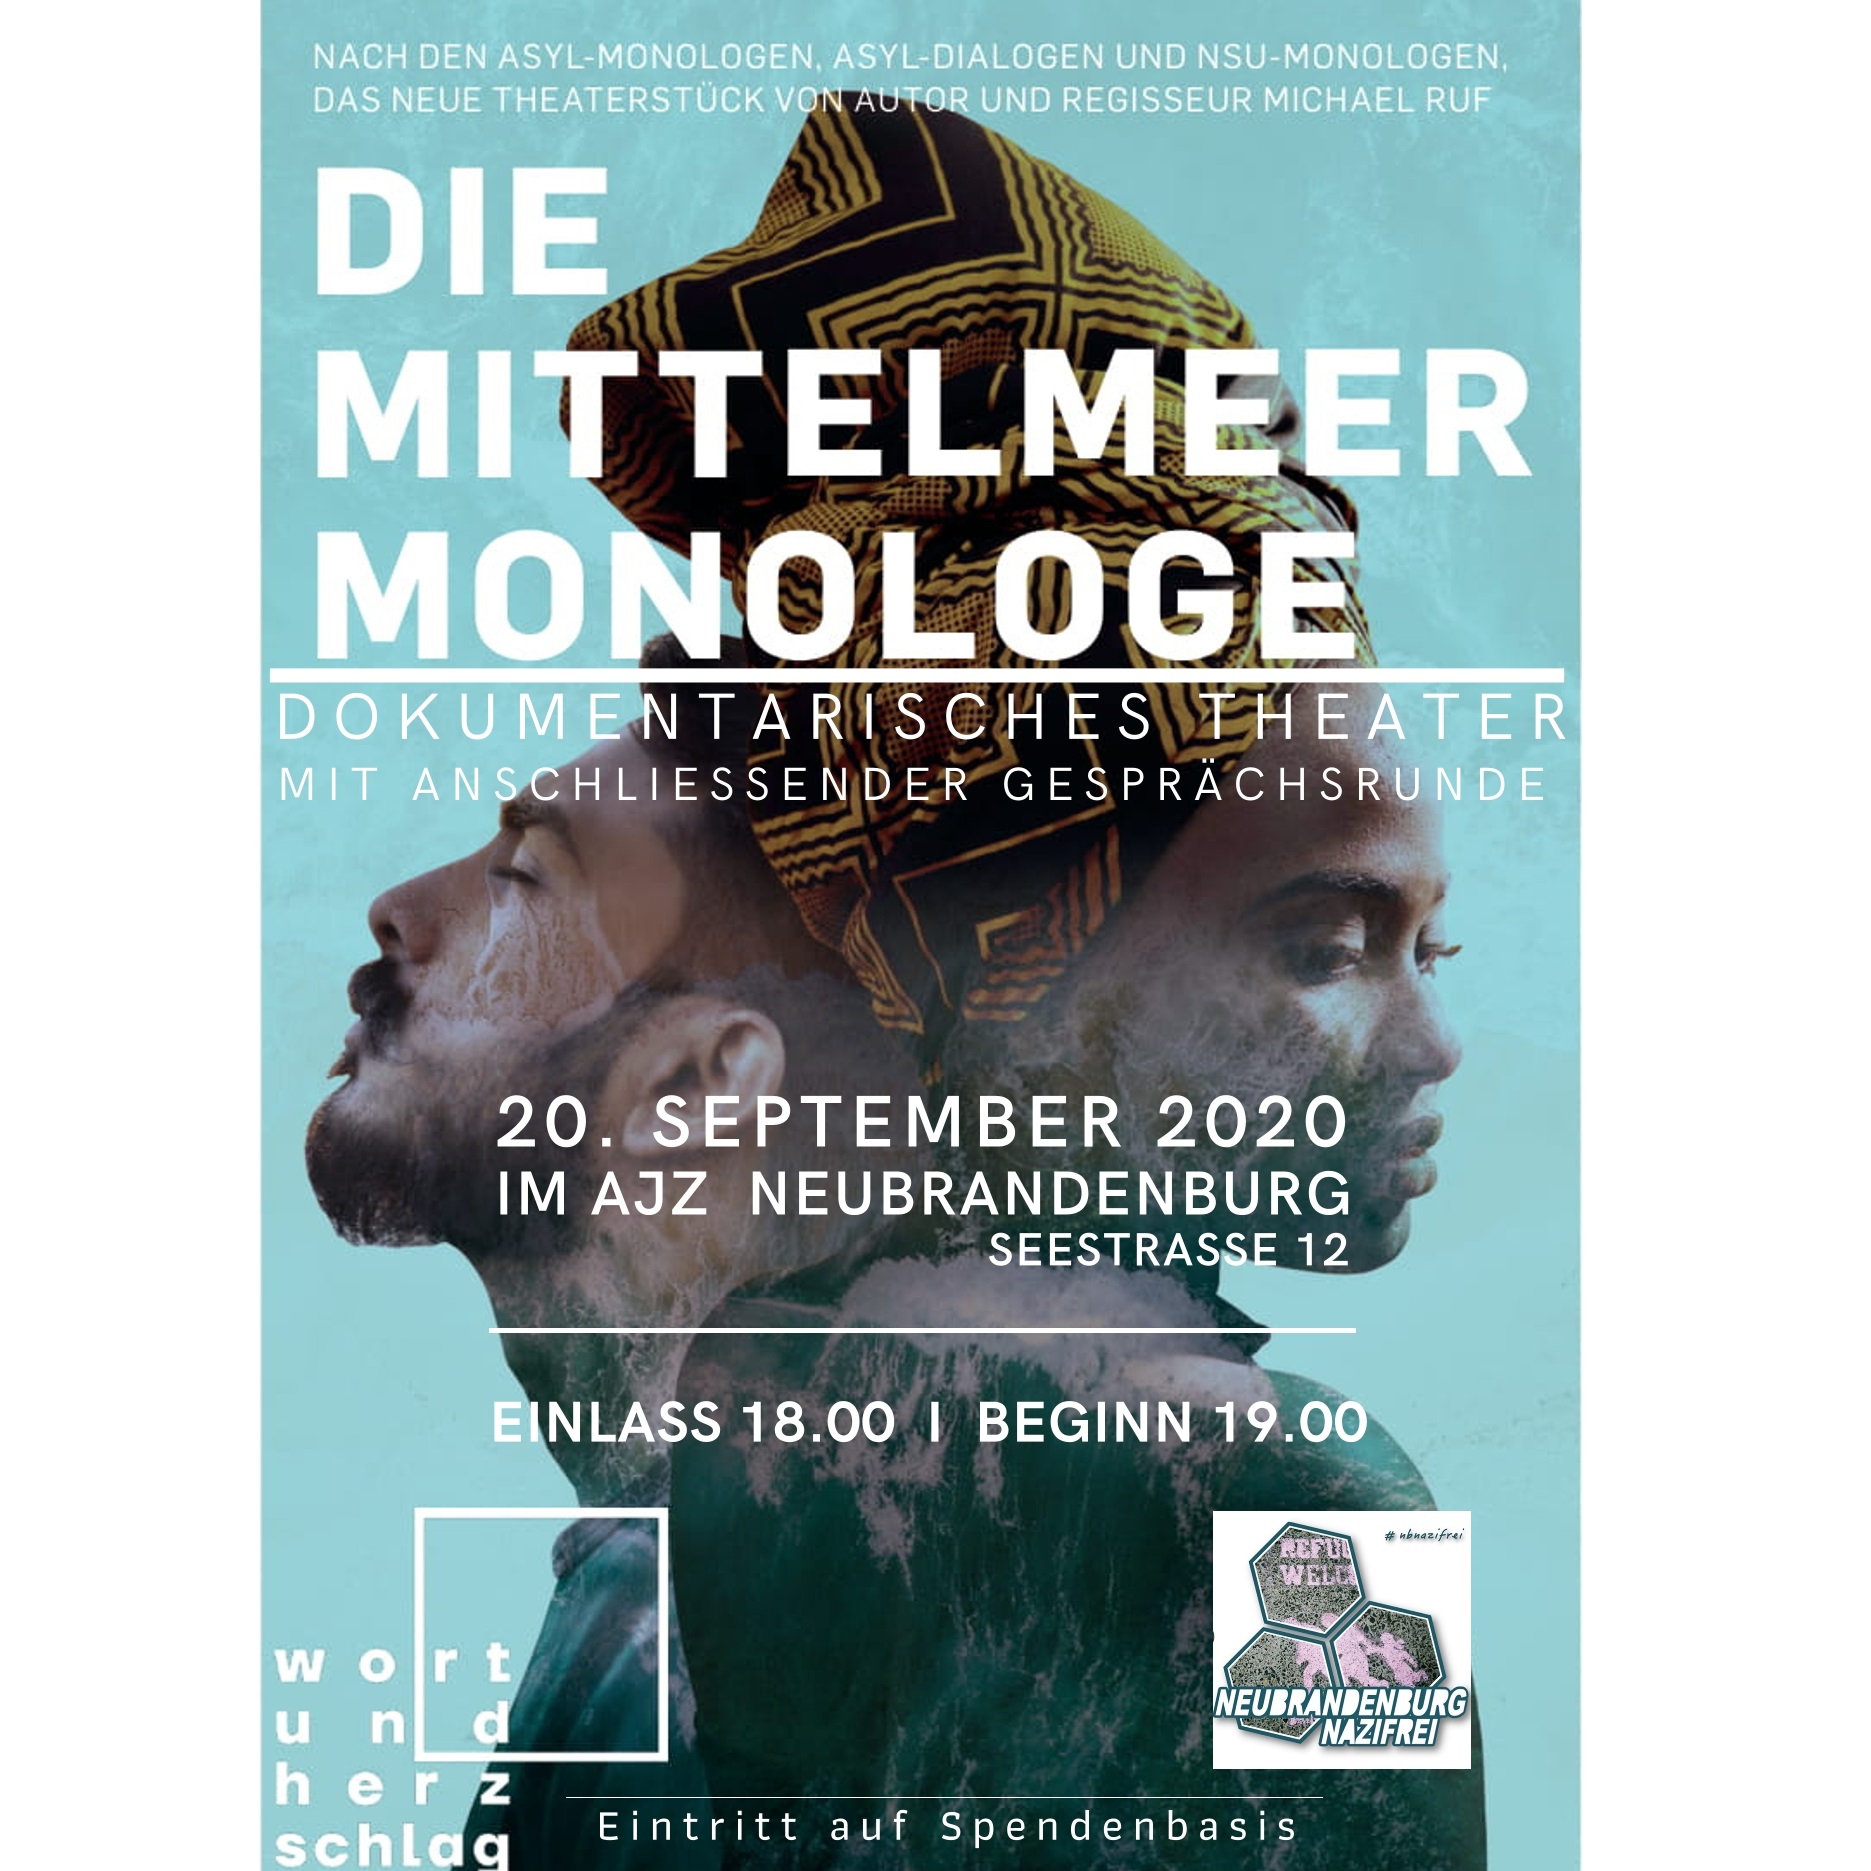 1_Flyer_Mittelmeer-Monologe_20.09.20_AJZ